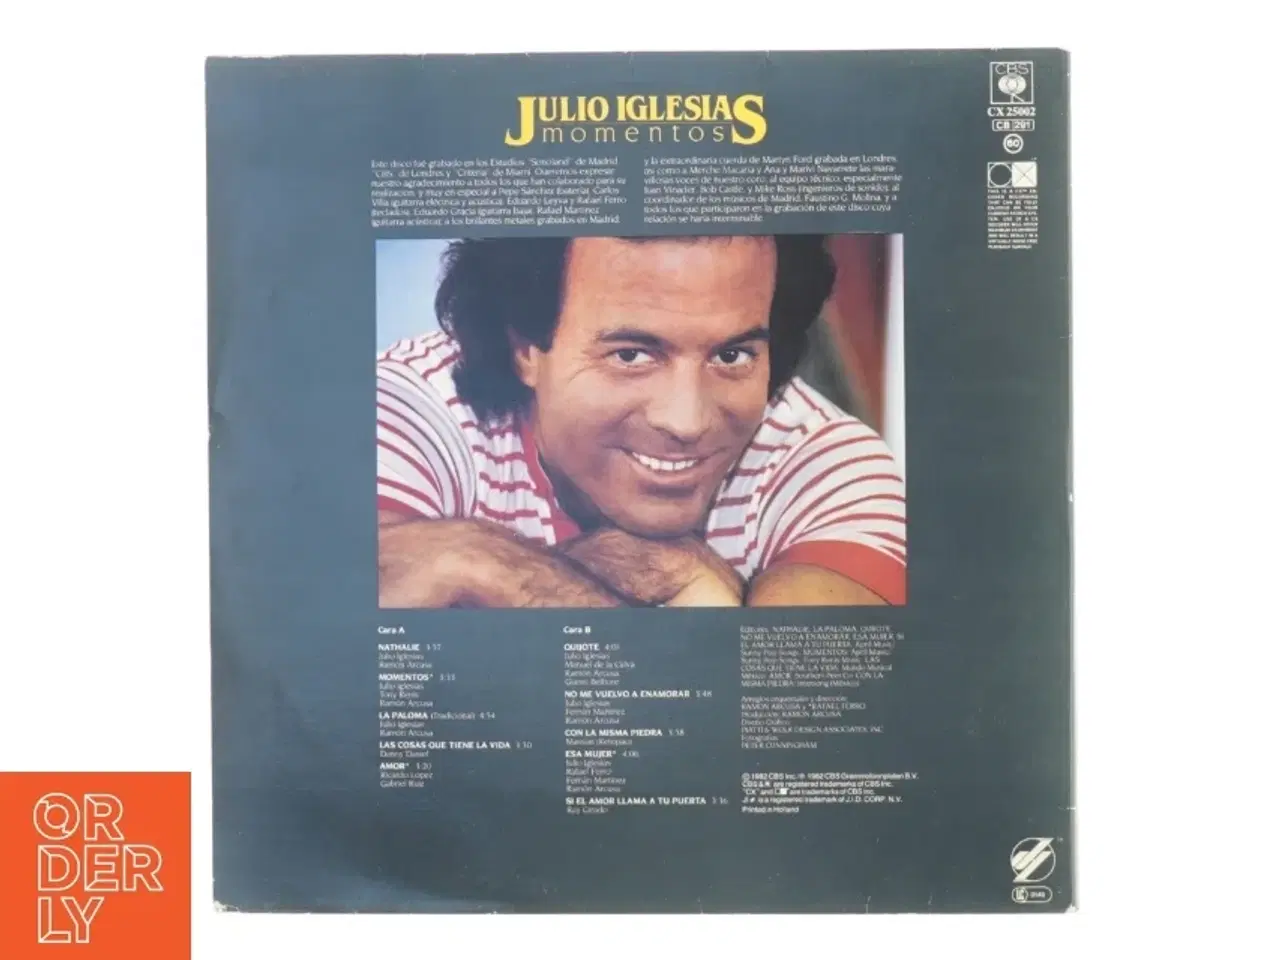 Billede 2 - LP Julio Iglesias; "Momentos" fra Cbs